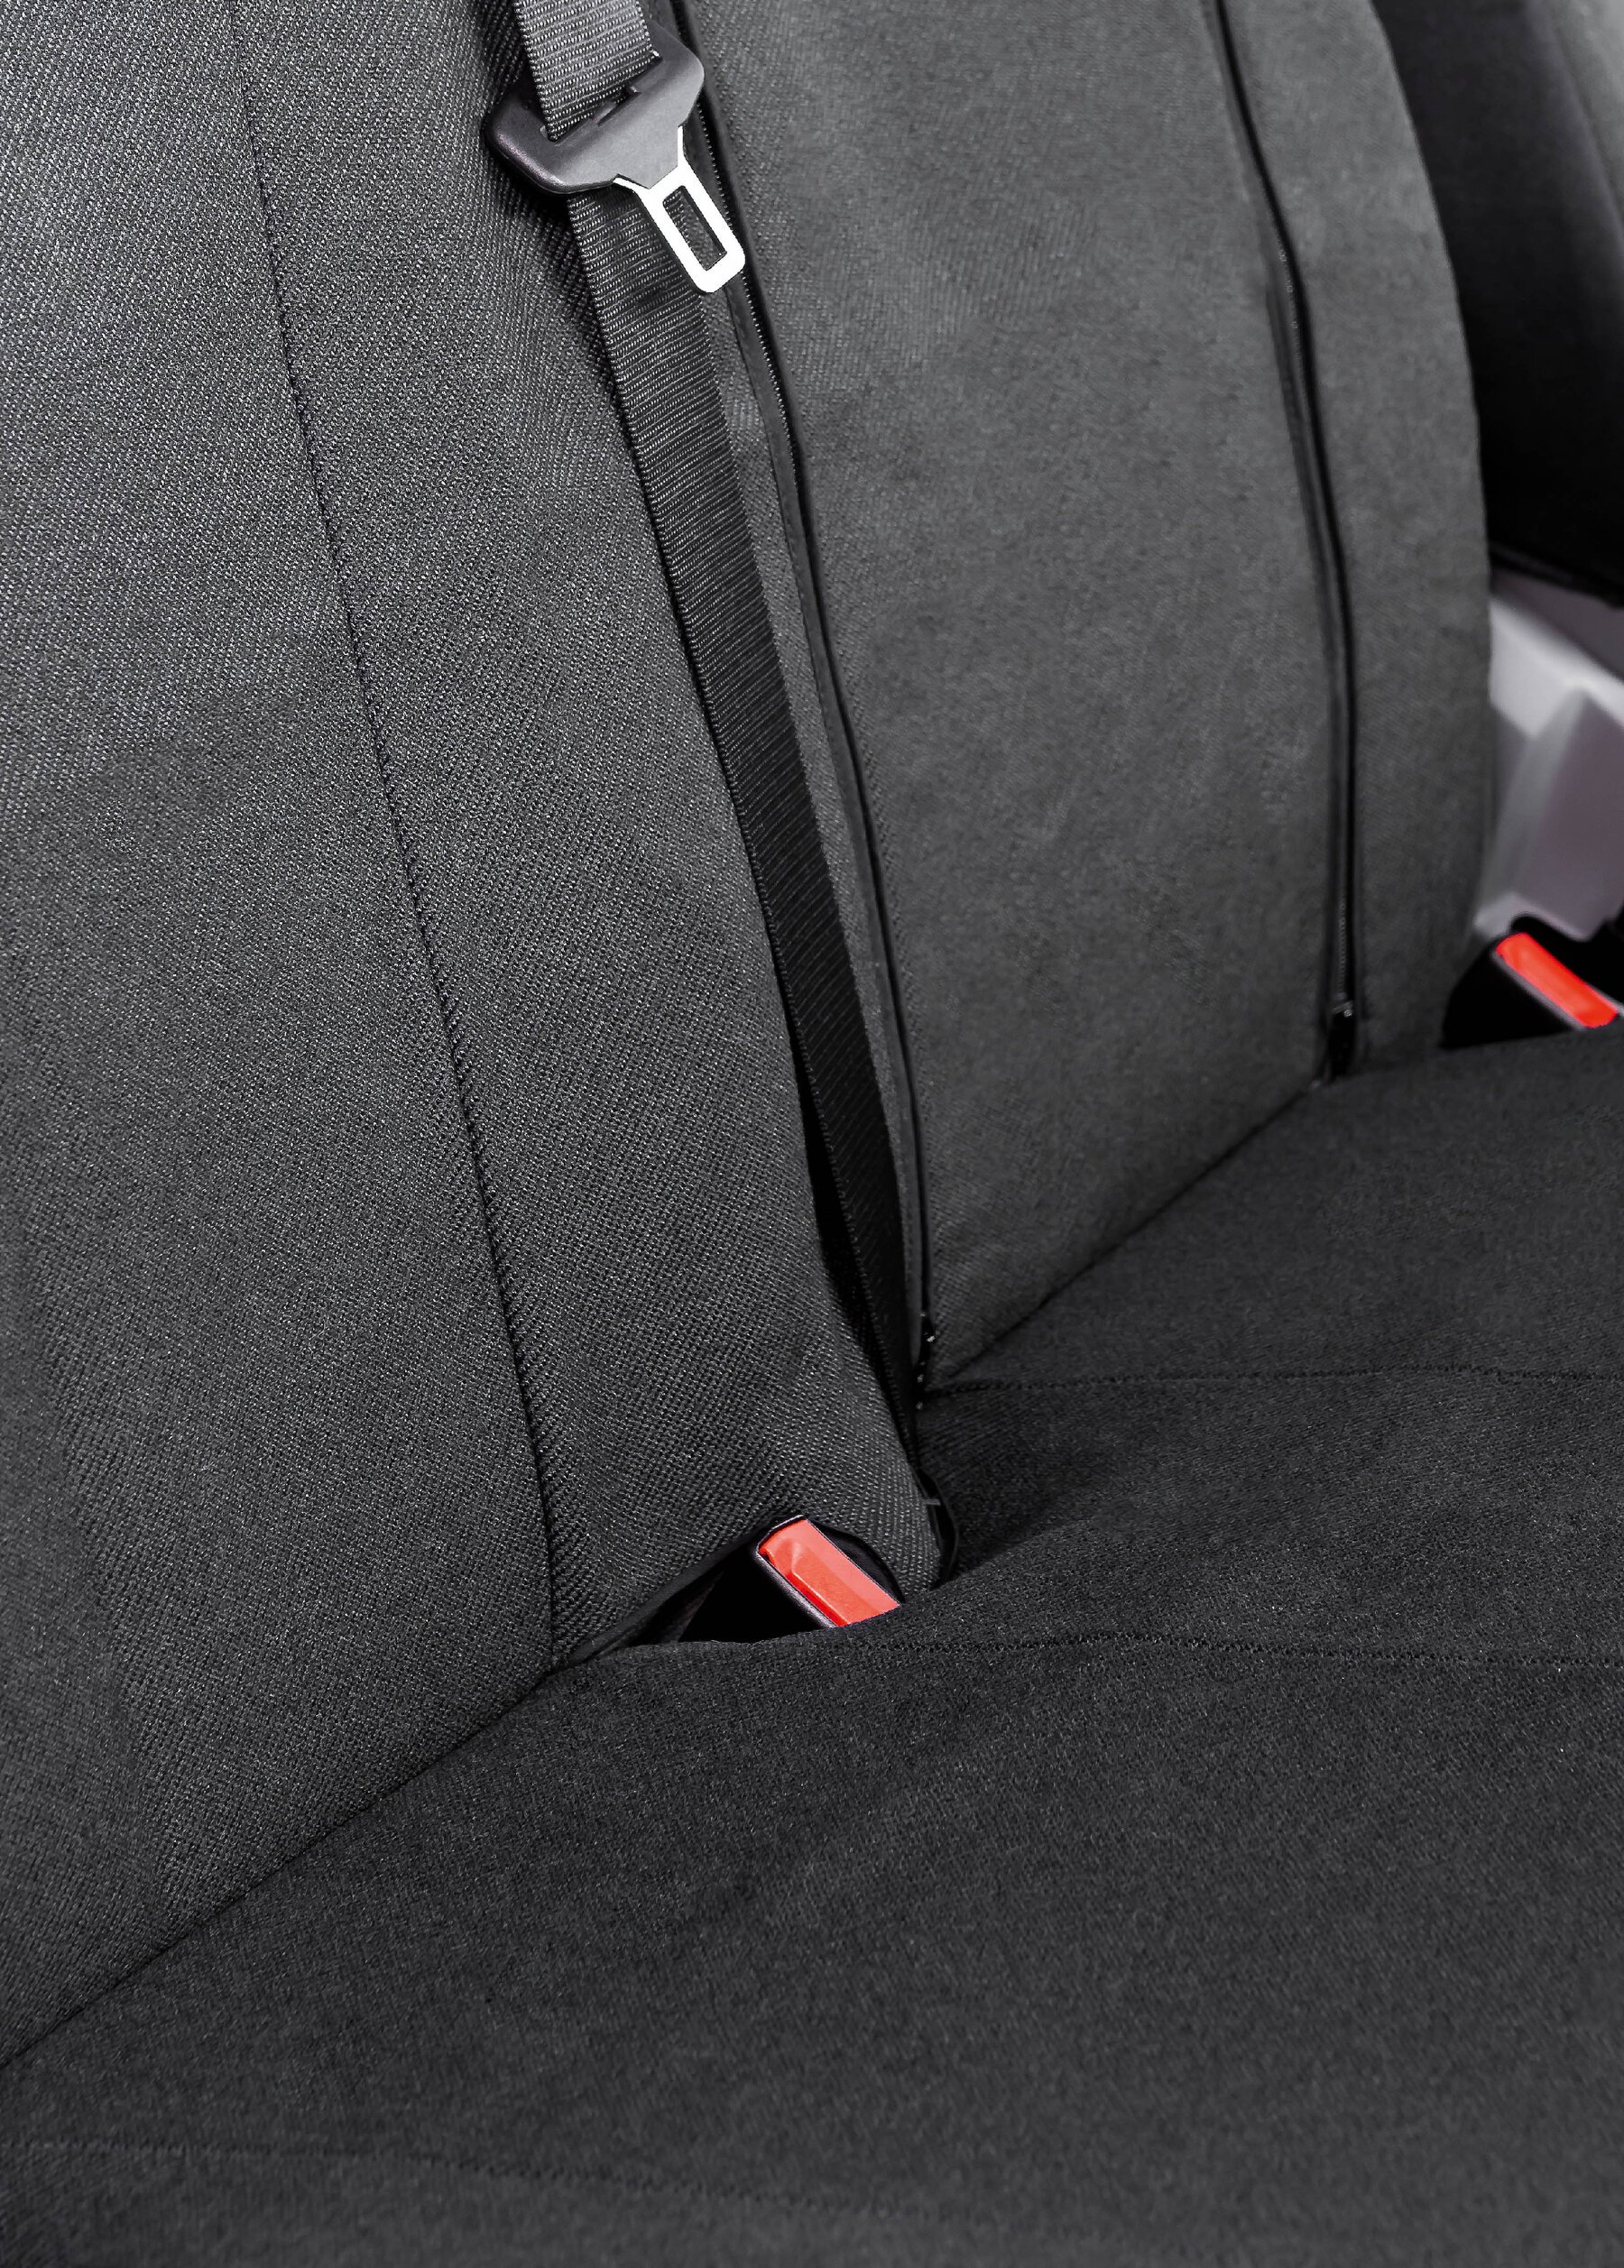 Transporter Coprisedili in tessuto per VW LT, Mercedes Sprinter, sedile singolo e doppio